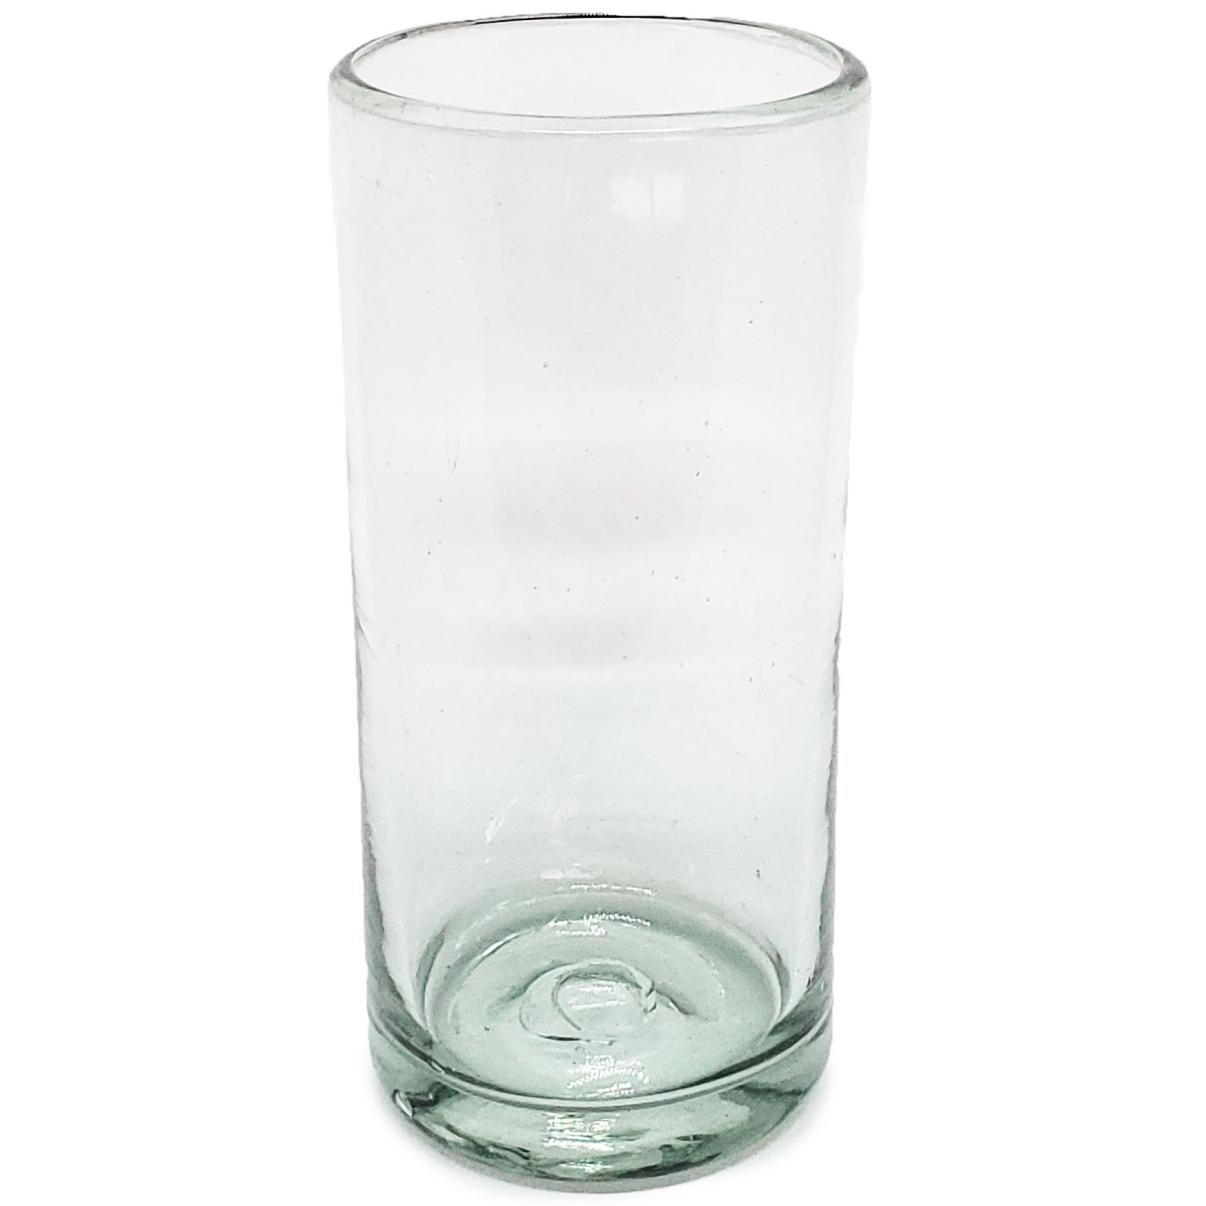 Color Transparente al Mayoreo / vasos Jumbo transparentes, 20 oz, Vidrio Reciclado, Libre de Plomo y Toxinas / ste clsico juego de vasos jumbo est hecho con vidrio reciclado. Contiene pequeas burbujas atrapadas en el vaso.